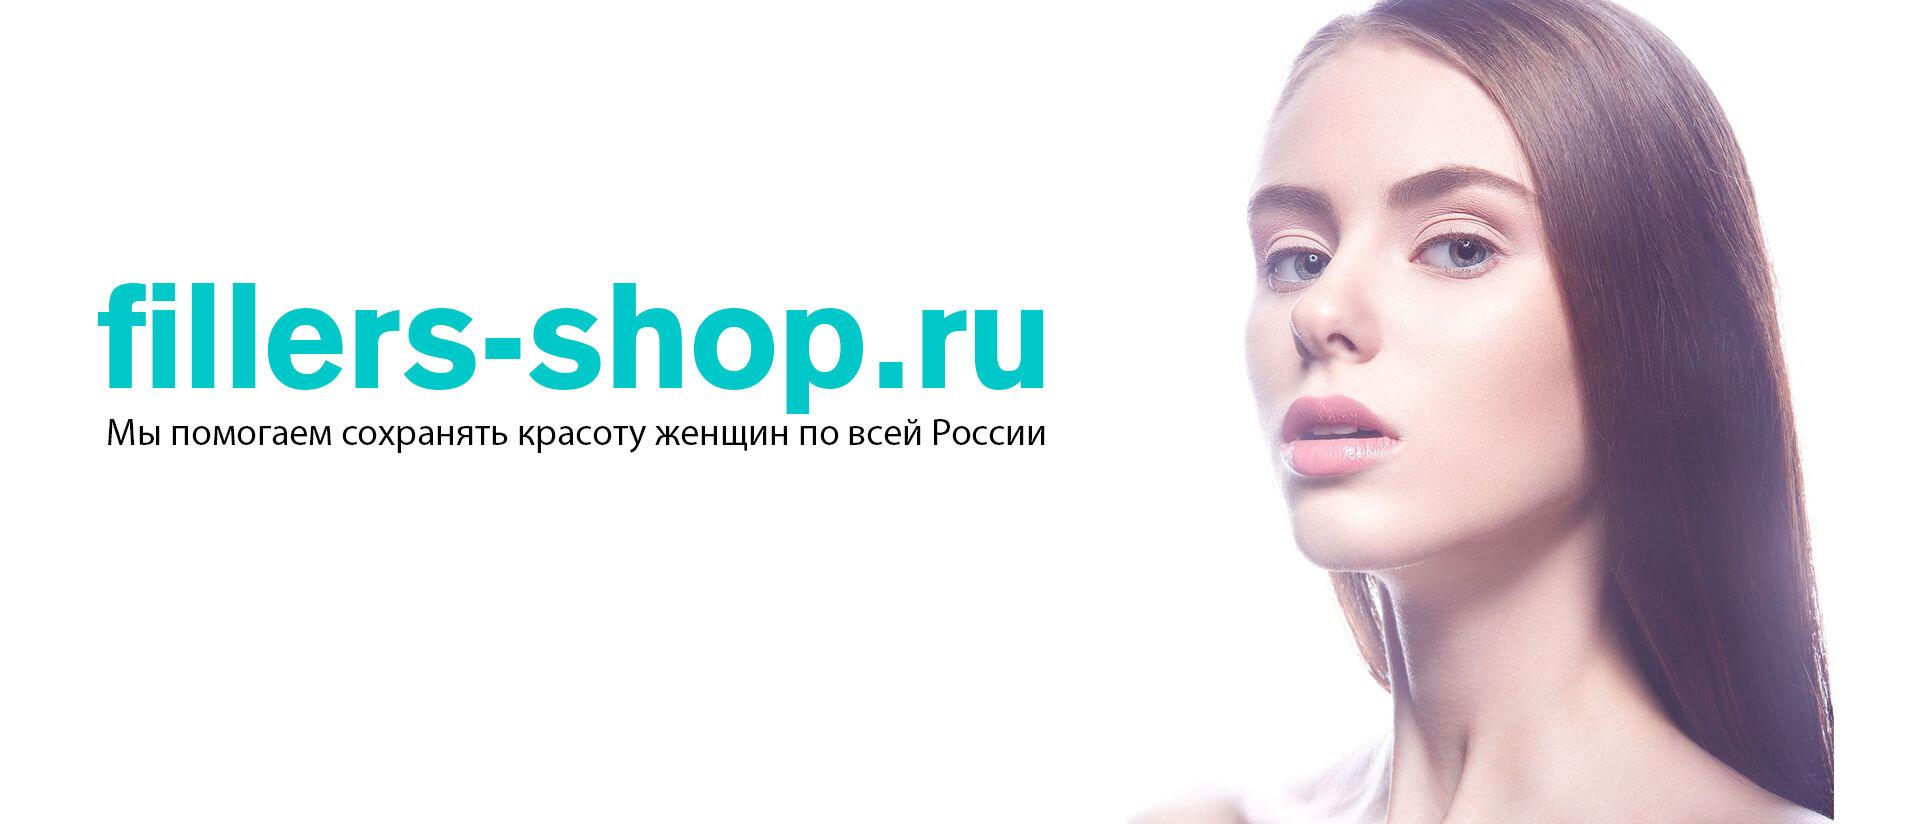 Fillers Ru Интернет Магазин